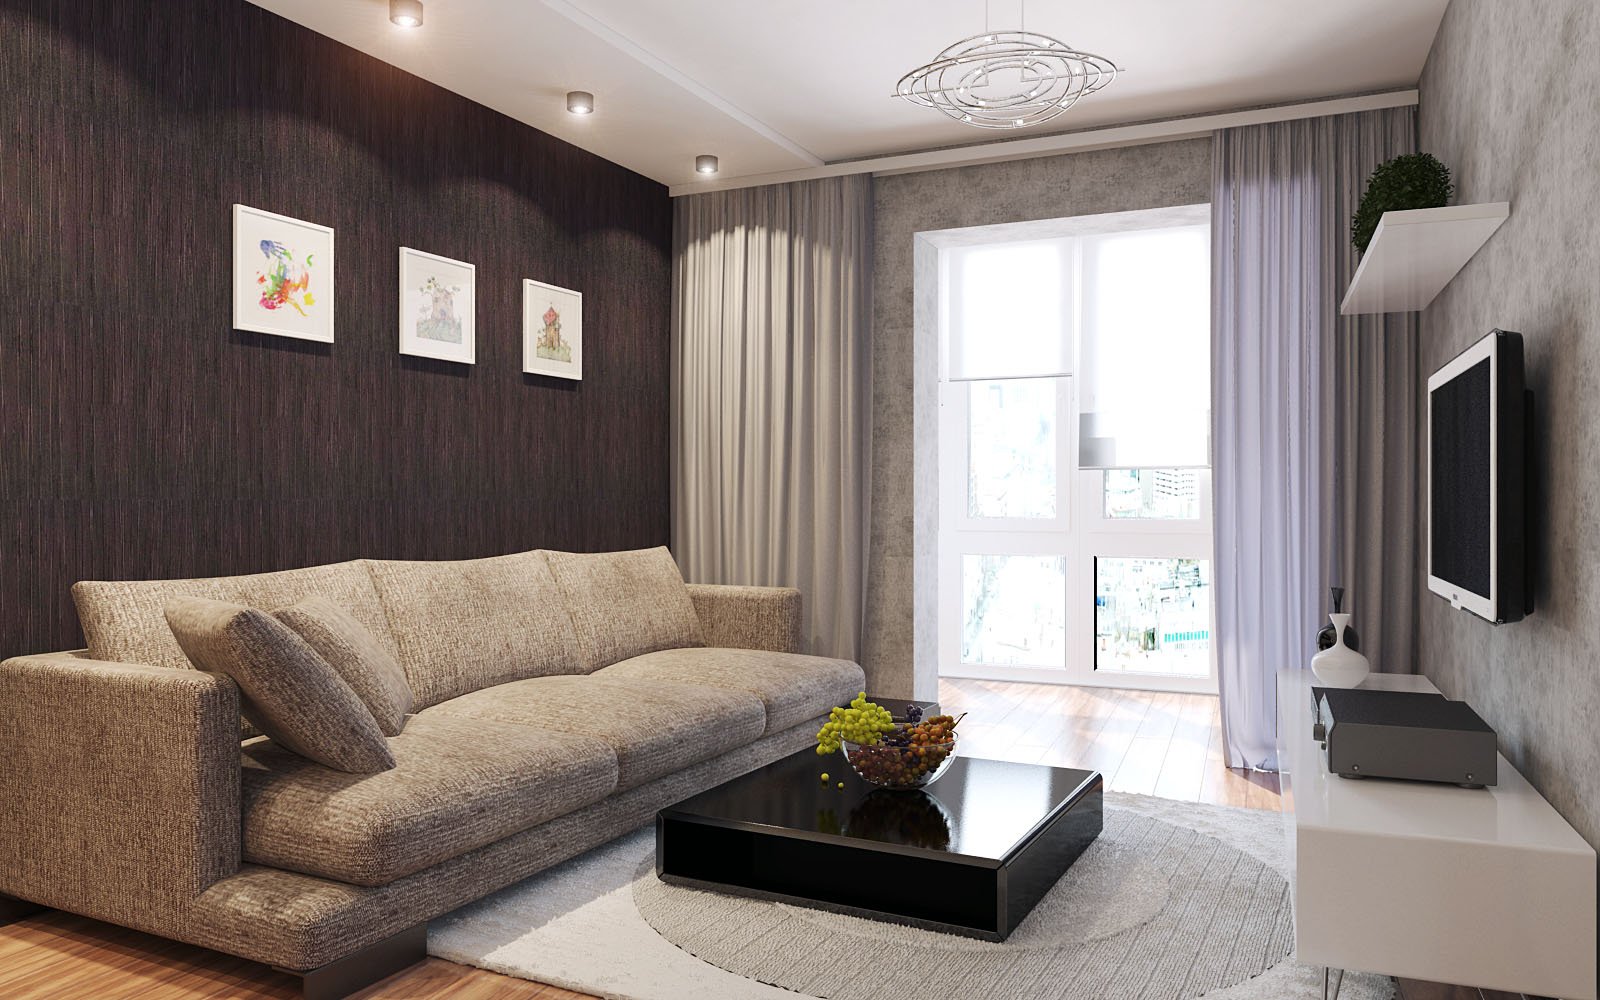 Интерьер зала: дизайн зала в квартире и в частном доме (30+ фото)